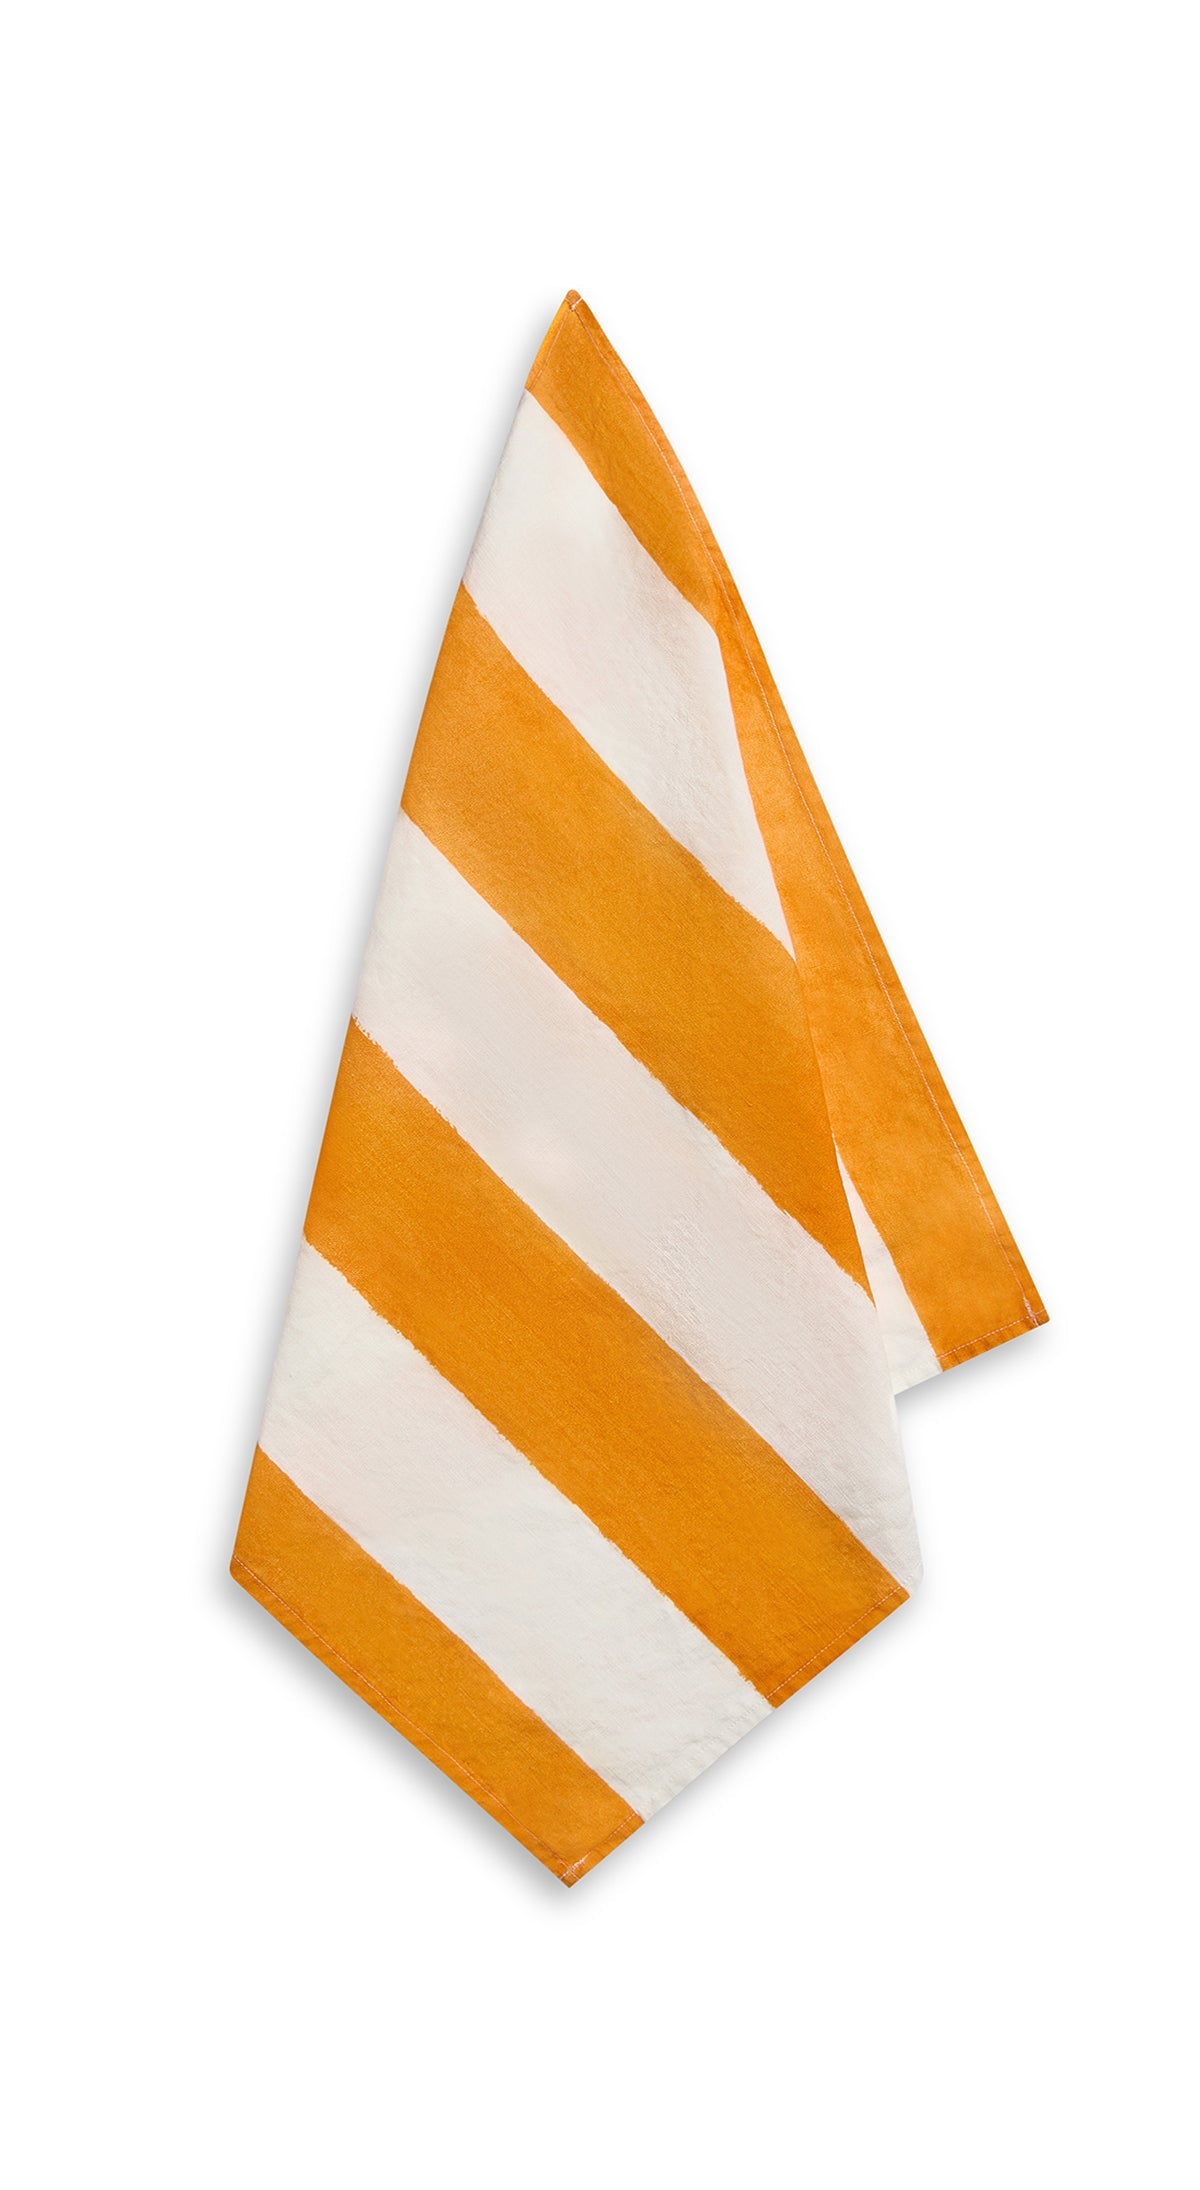 Stripe Linen Napkin in Orange & White, 50x50cm